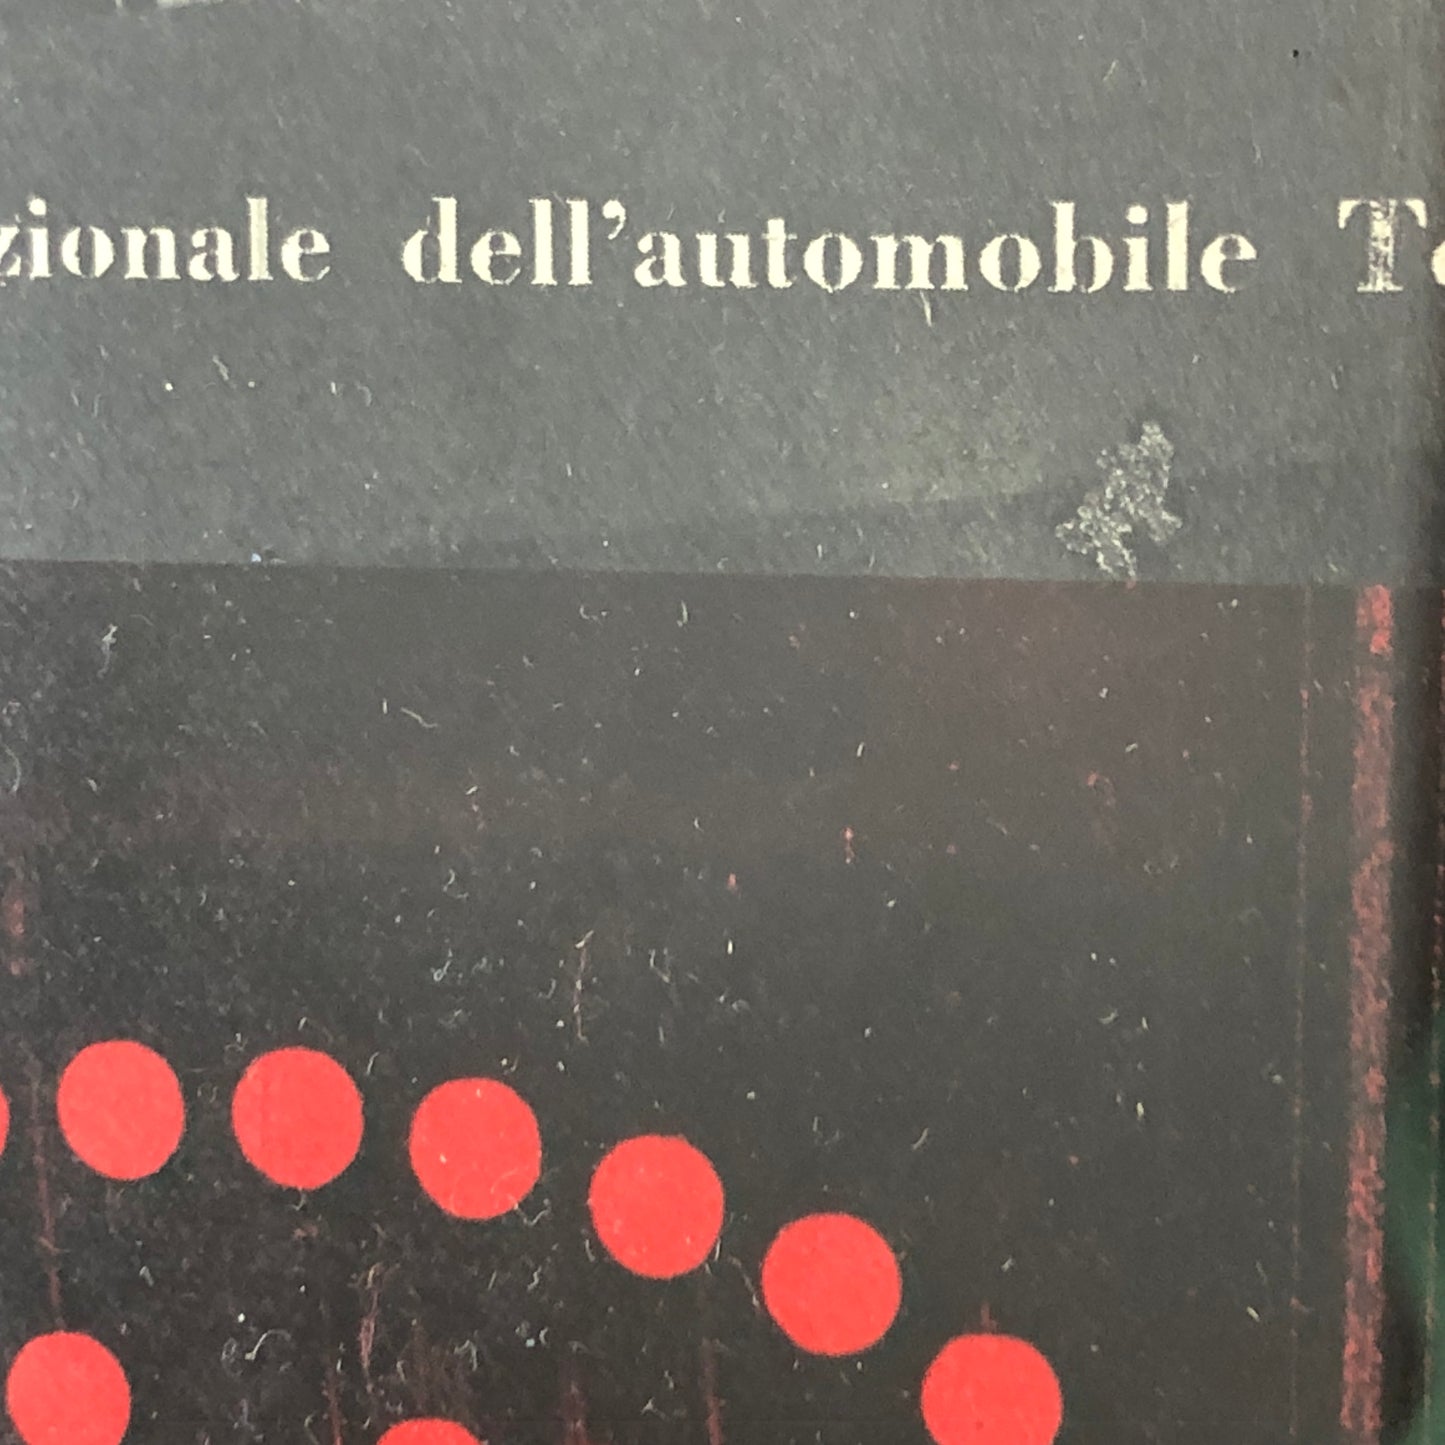 VIS, Pubblicità Anno 1959 VIS Vetro Italiano di Sicurezza 41° Salone Internazionale dell'Automobile Torino